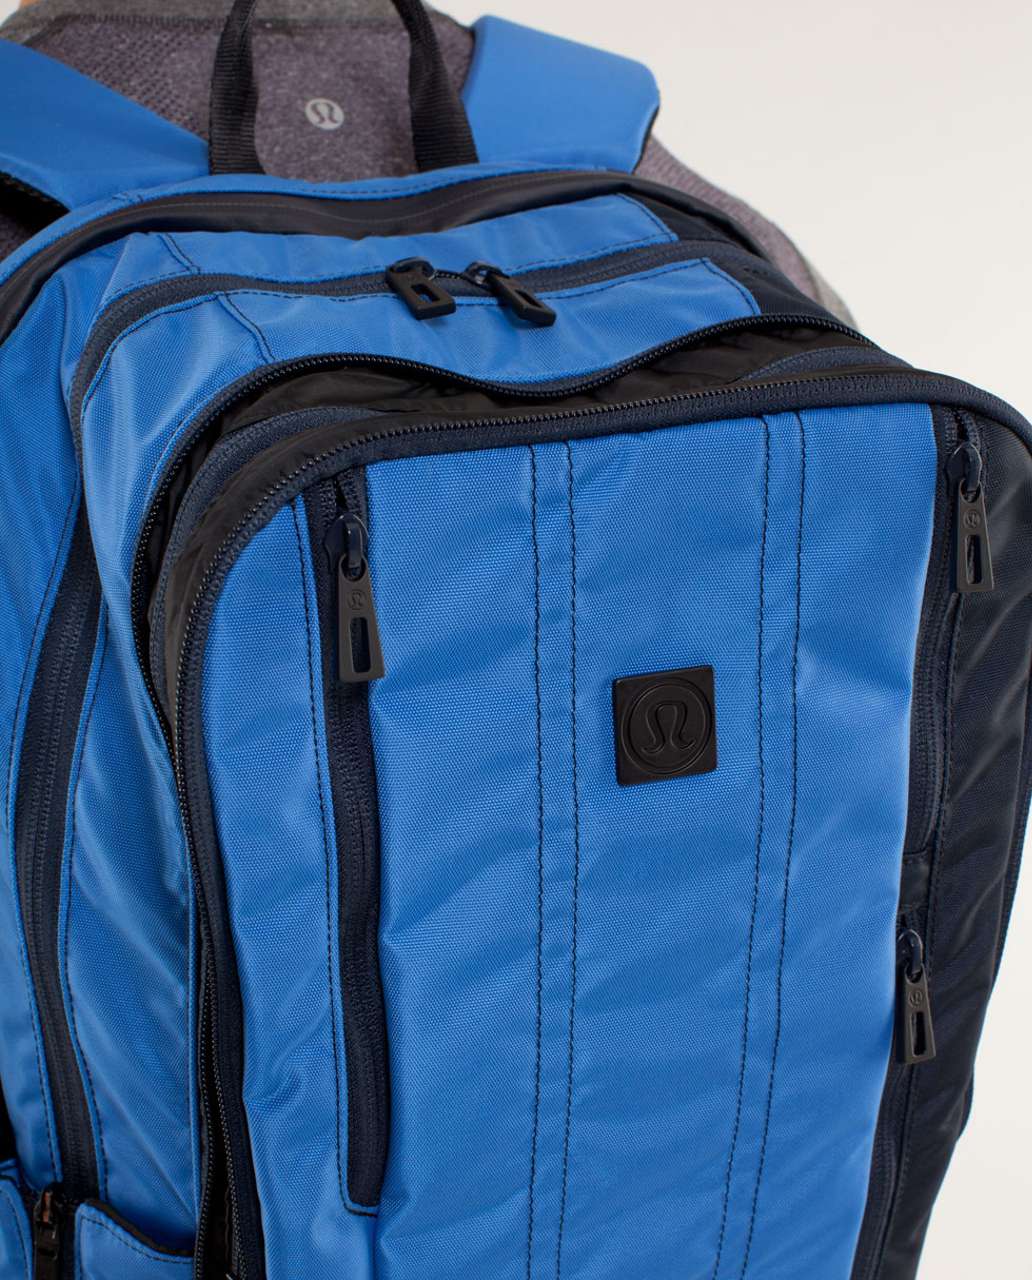 Lululemon Urban Trekker Backpack - Lakemont Blue / Black Iris Blue